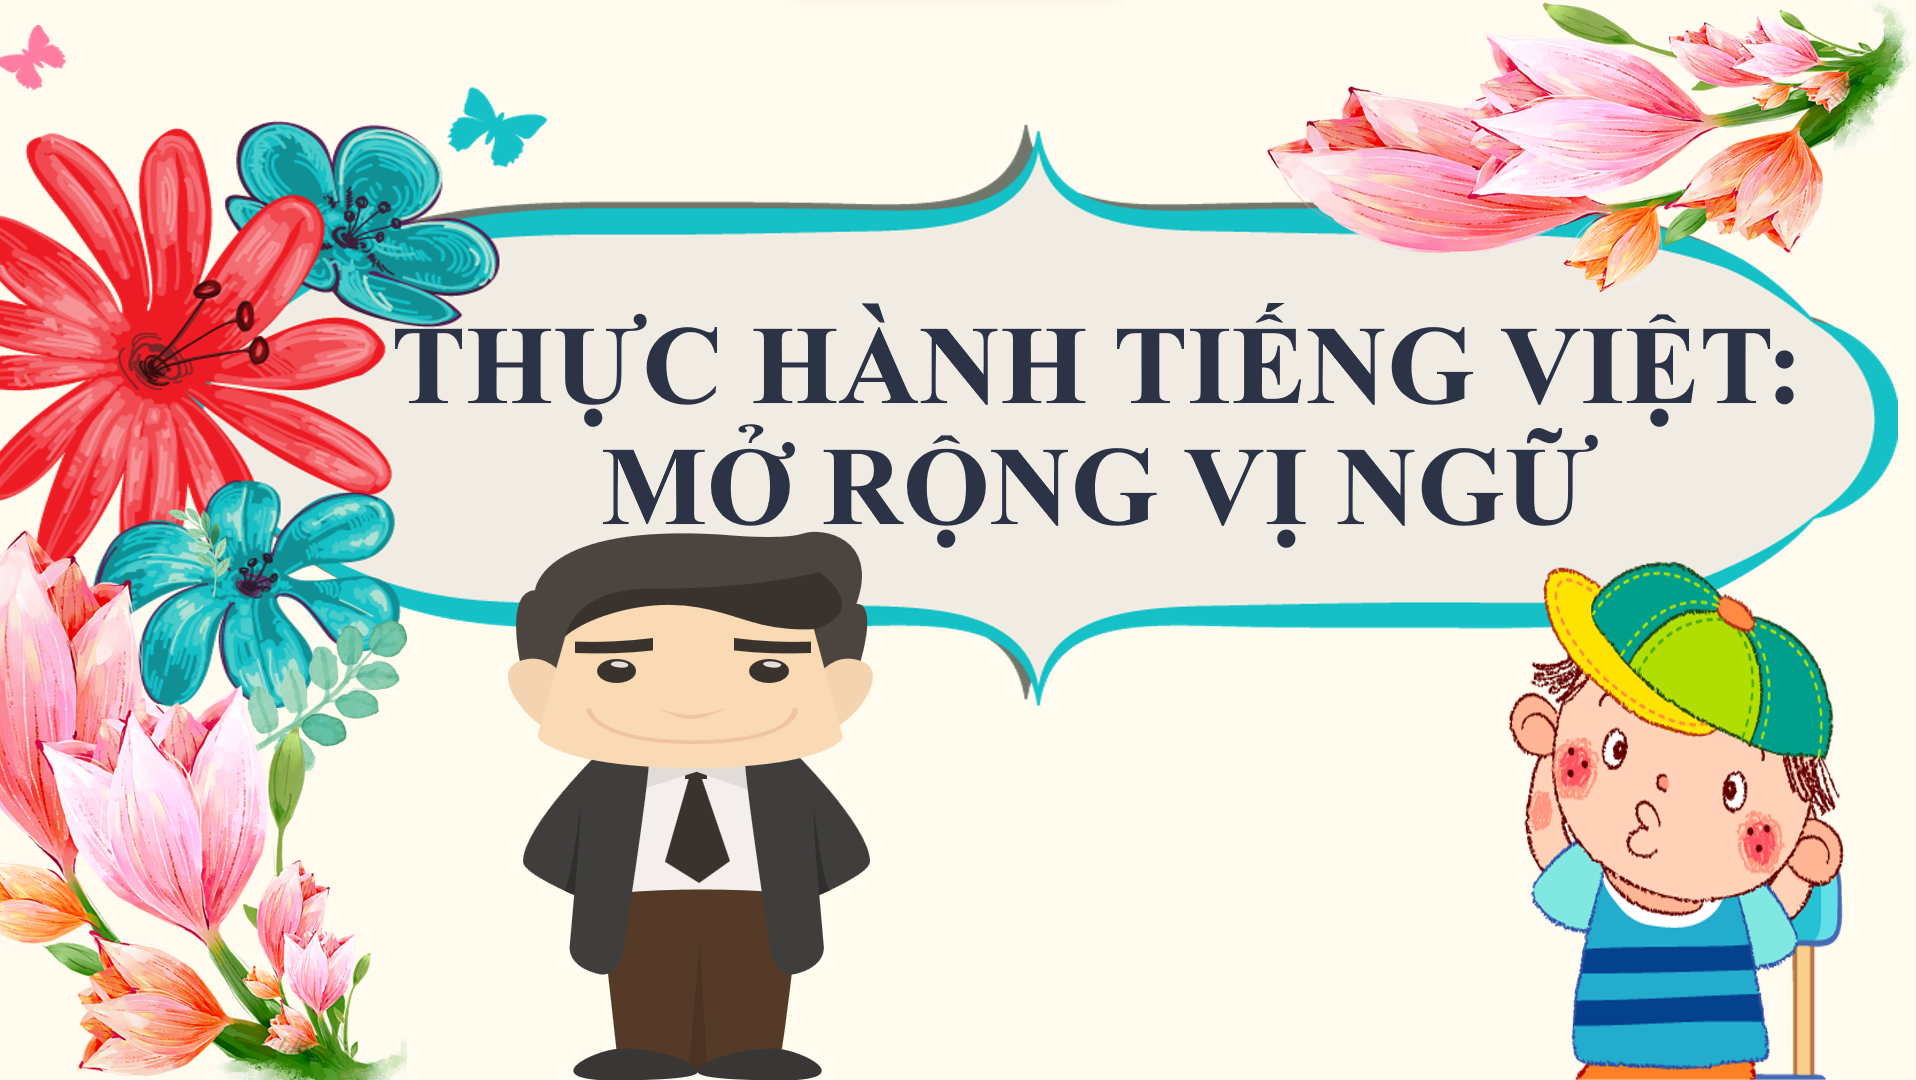 Bài 5: Thực hành tiếng Việt - Bộ sách Cánh diều